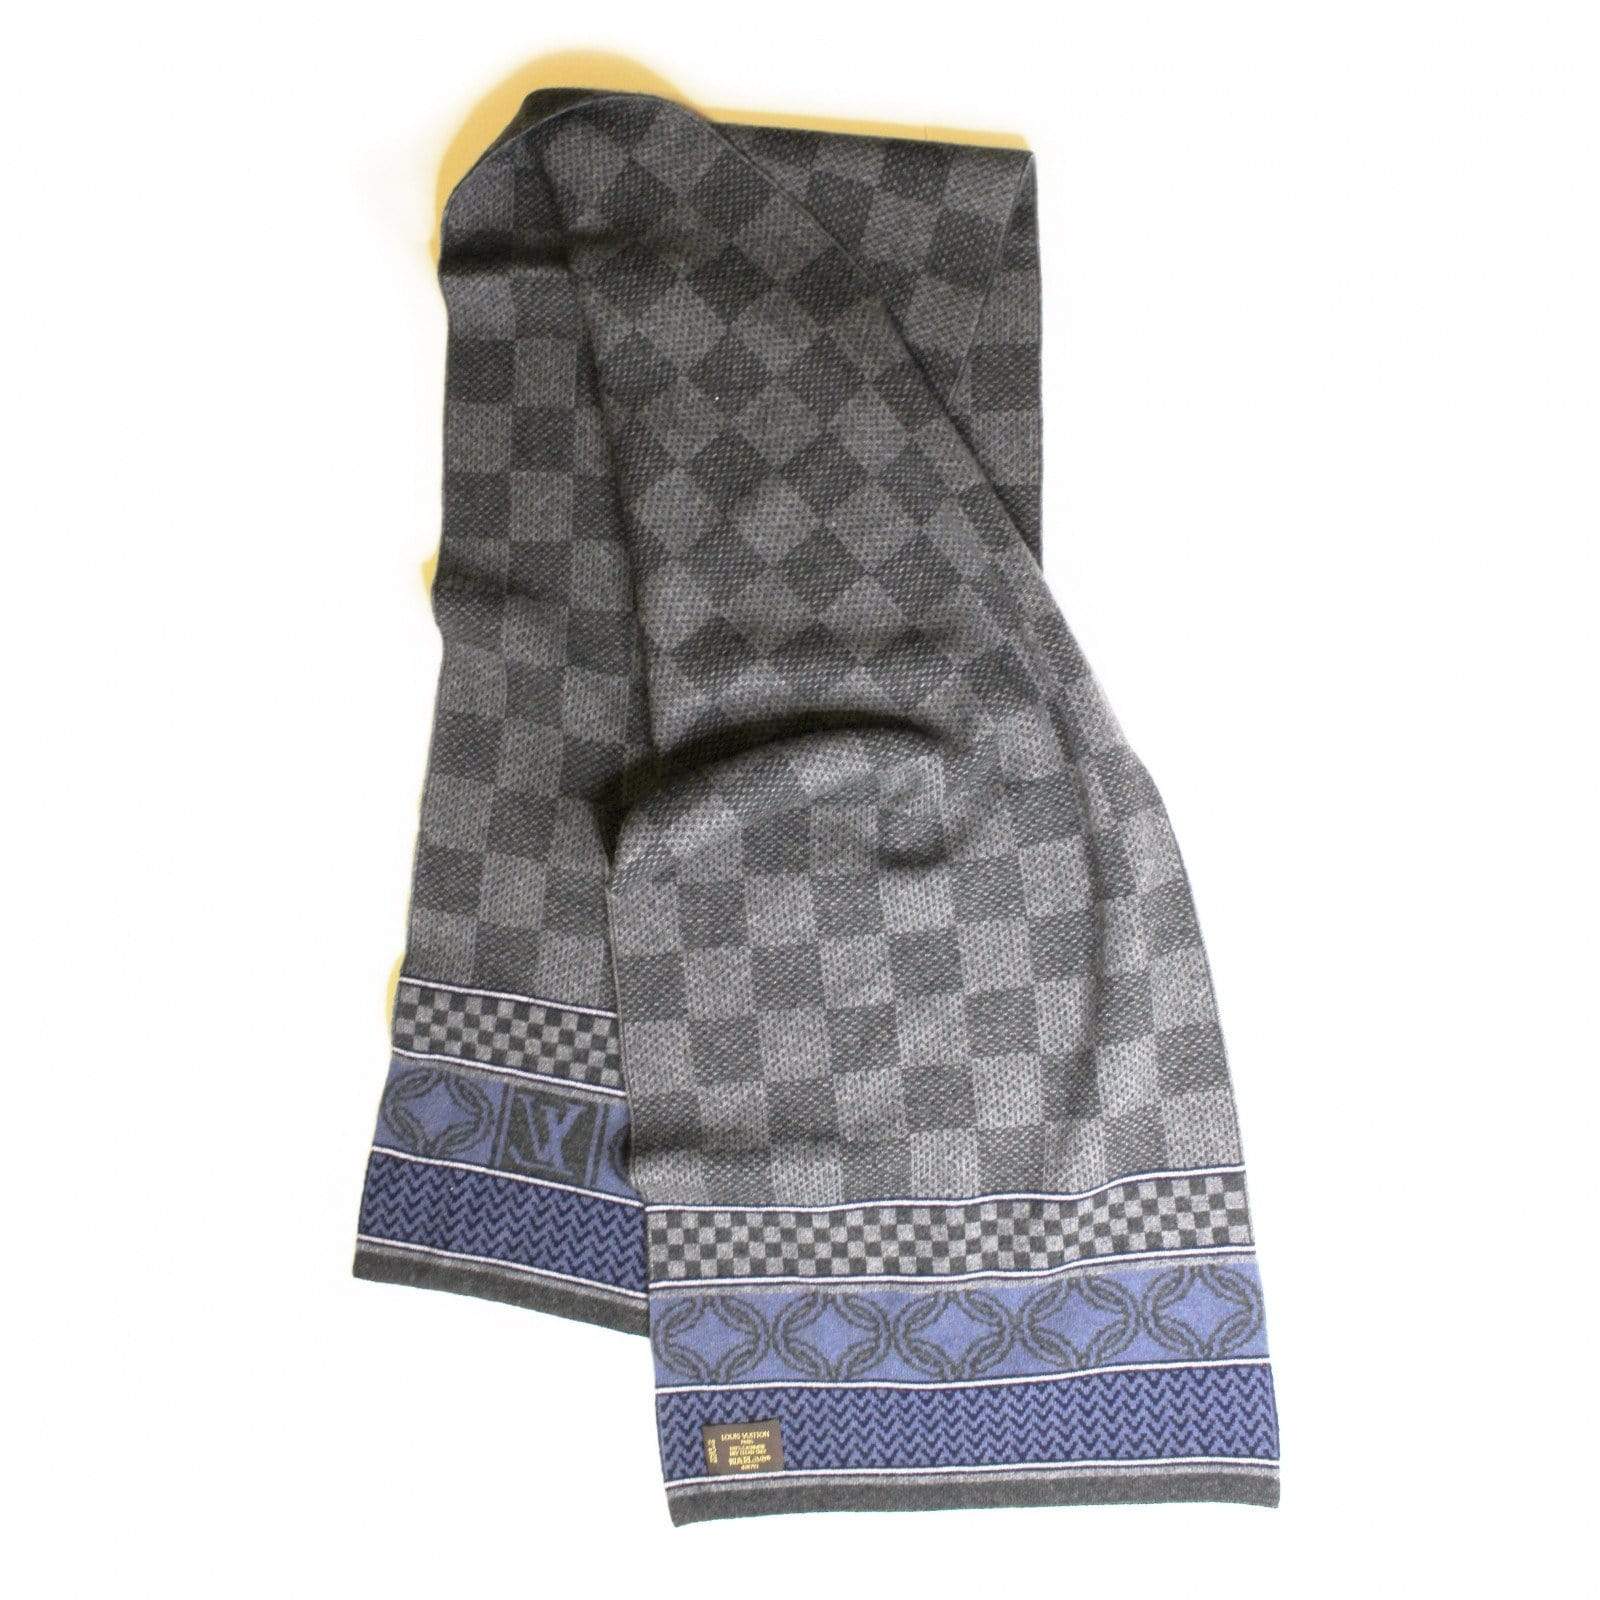 Dhgate Louis Vuitton Scarf  Louis vuitton scarf, Designer scarves, Louis  vuitton